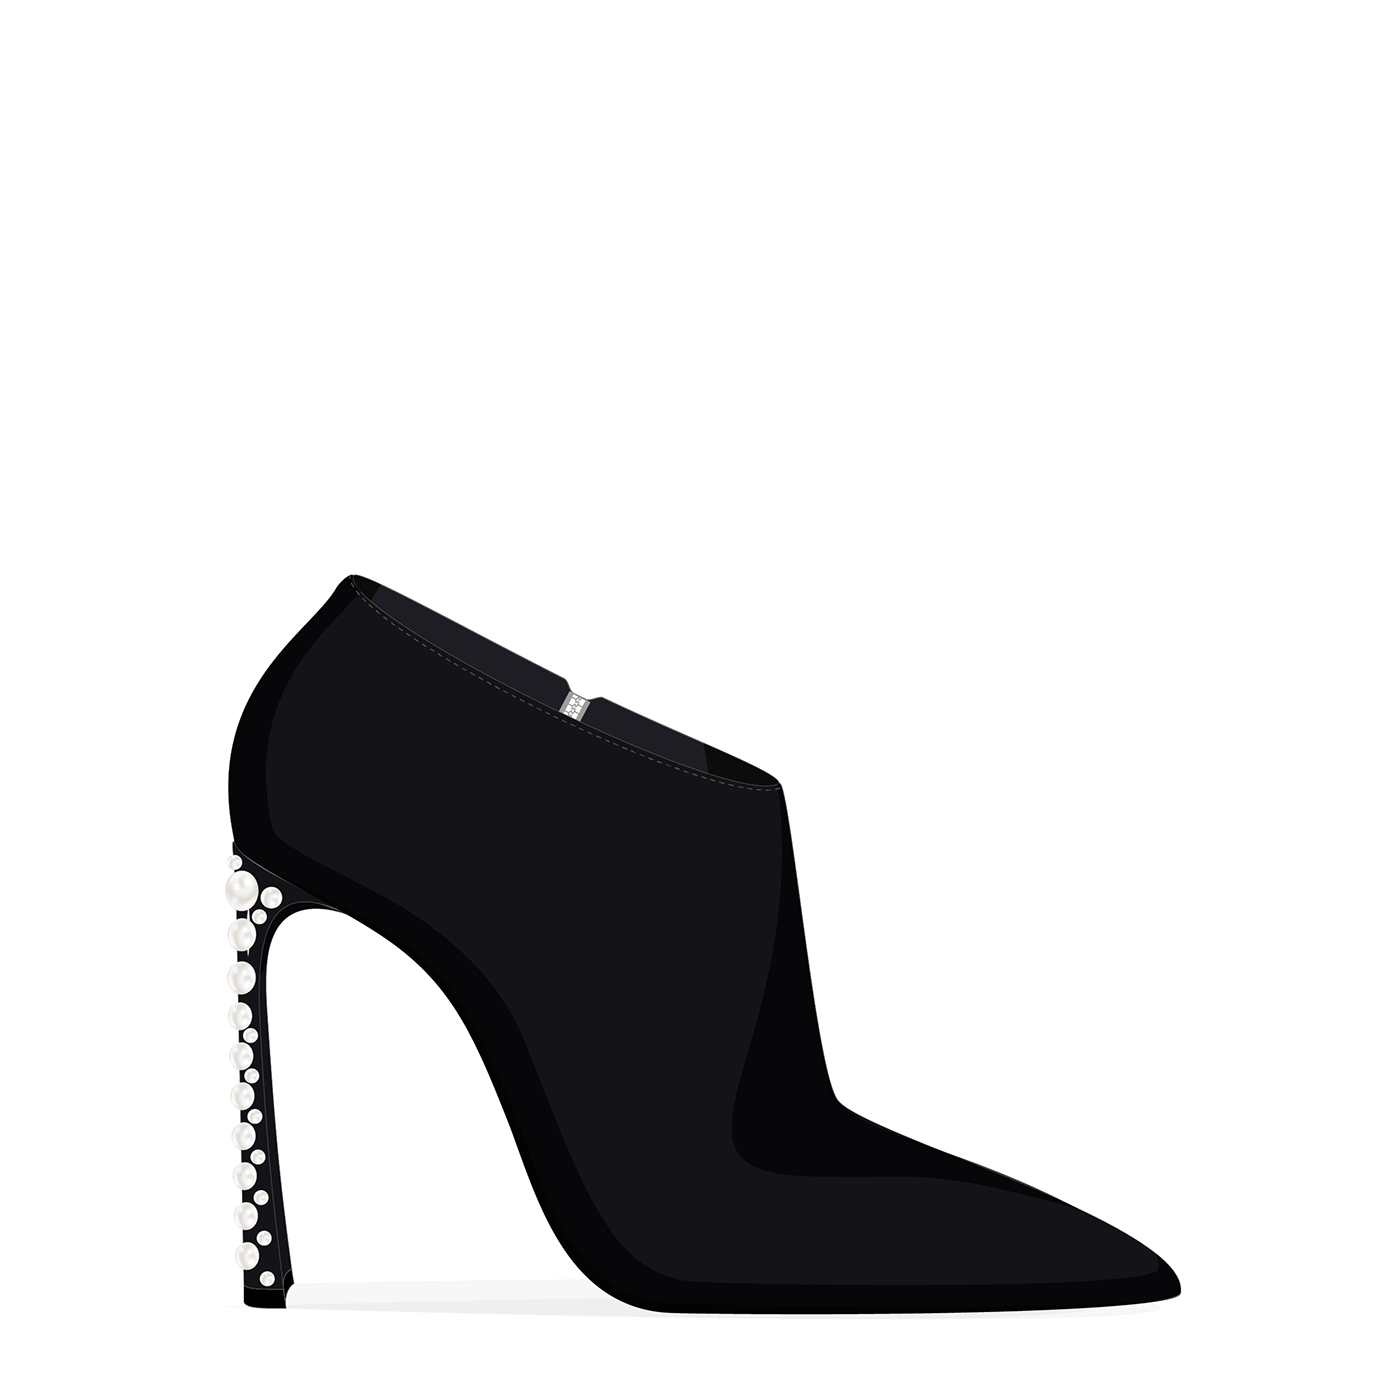 footwear footwear design handbag Handbag Design leather goods shoes shoes design